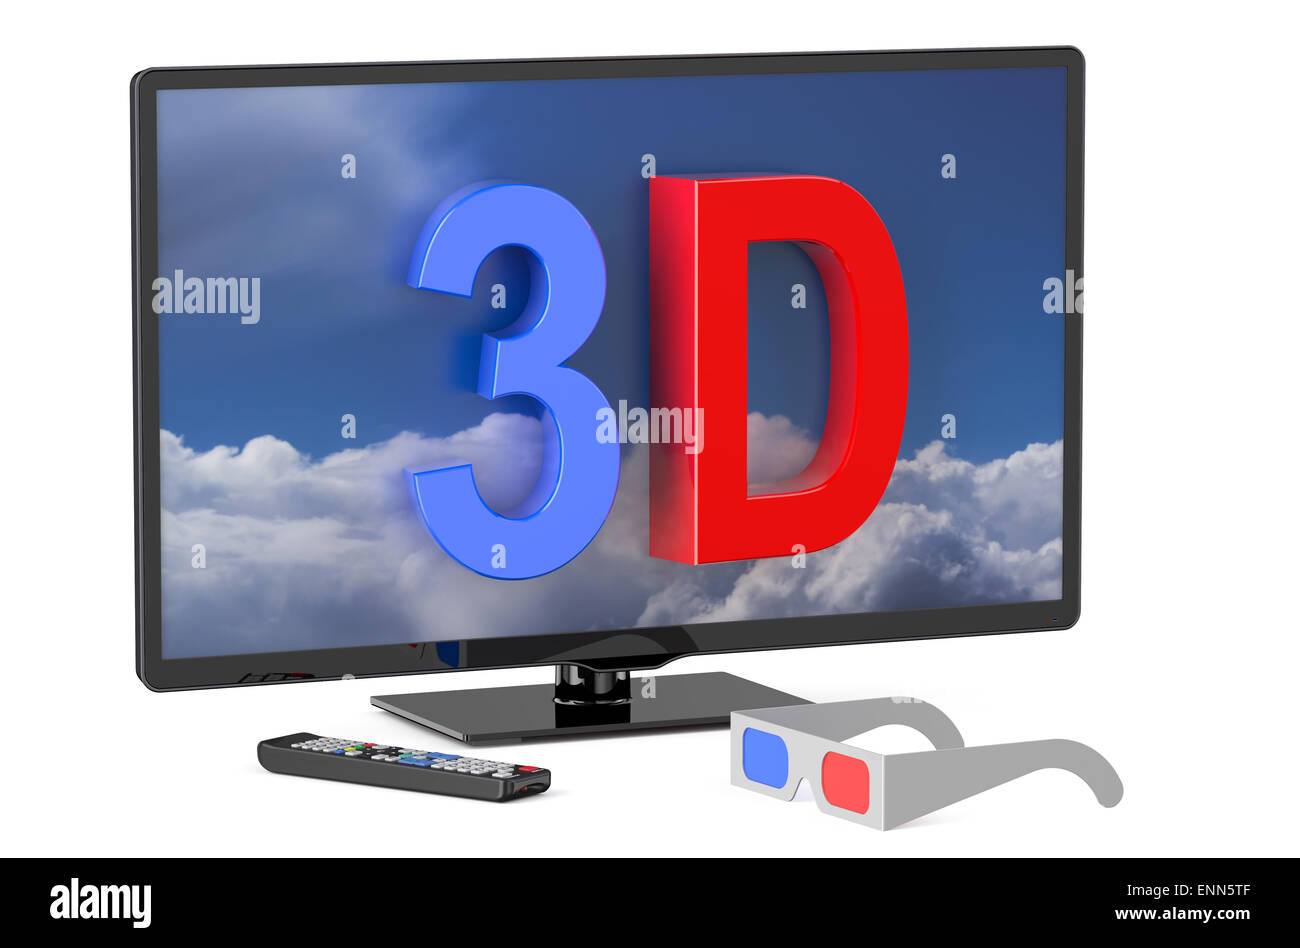 Televisione 3d immagini e fotografie stock ad alta risoluzione - Alamy